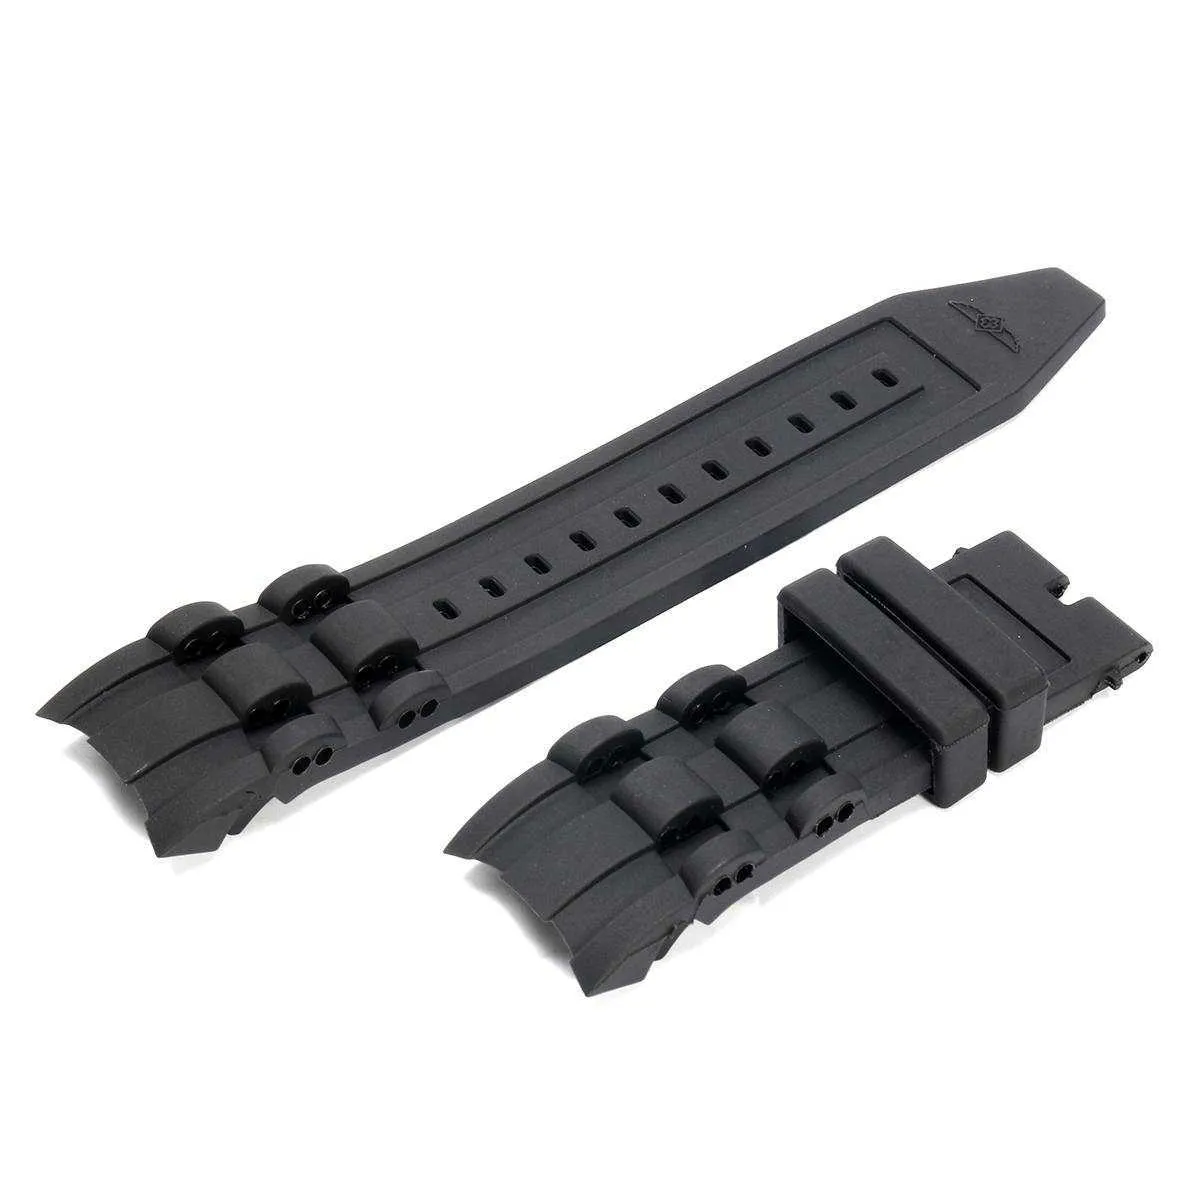 26mm siliconen rubberen horlogeband zwart luxe heren polsbandje horloge armband vervangende riem nee gesp voor / invicta / pro / duiker H0915